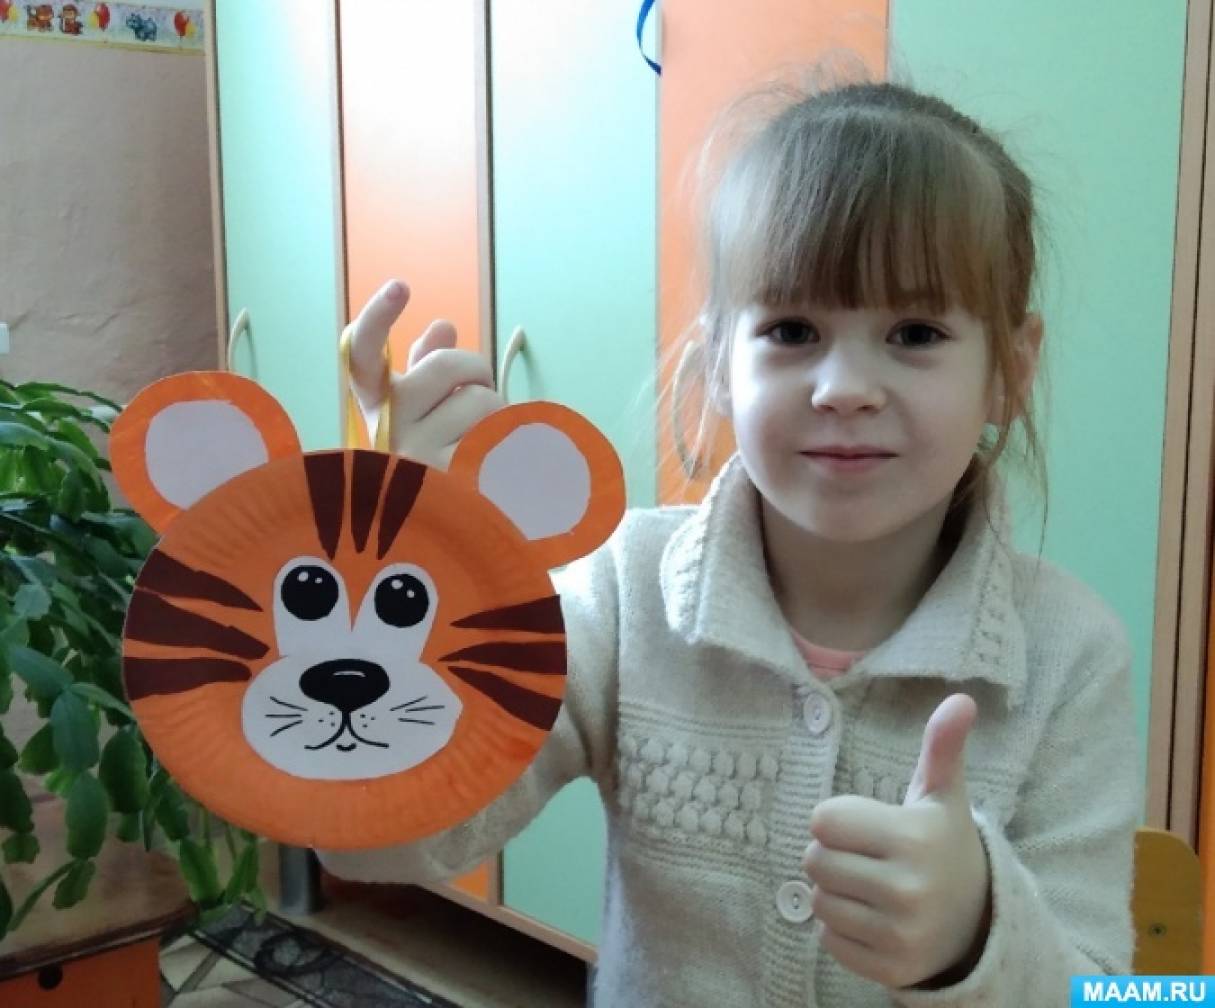 Детский мастер-класс по конструированию из бумажной тарелки подвески «Тигрёнок» с элементами рисования и аппликации